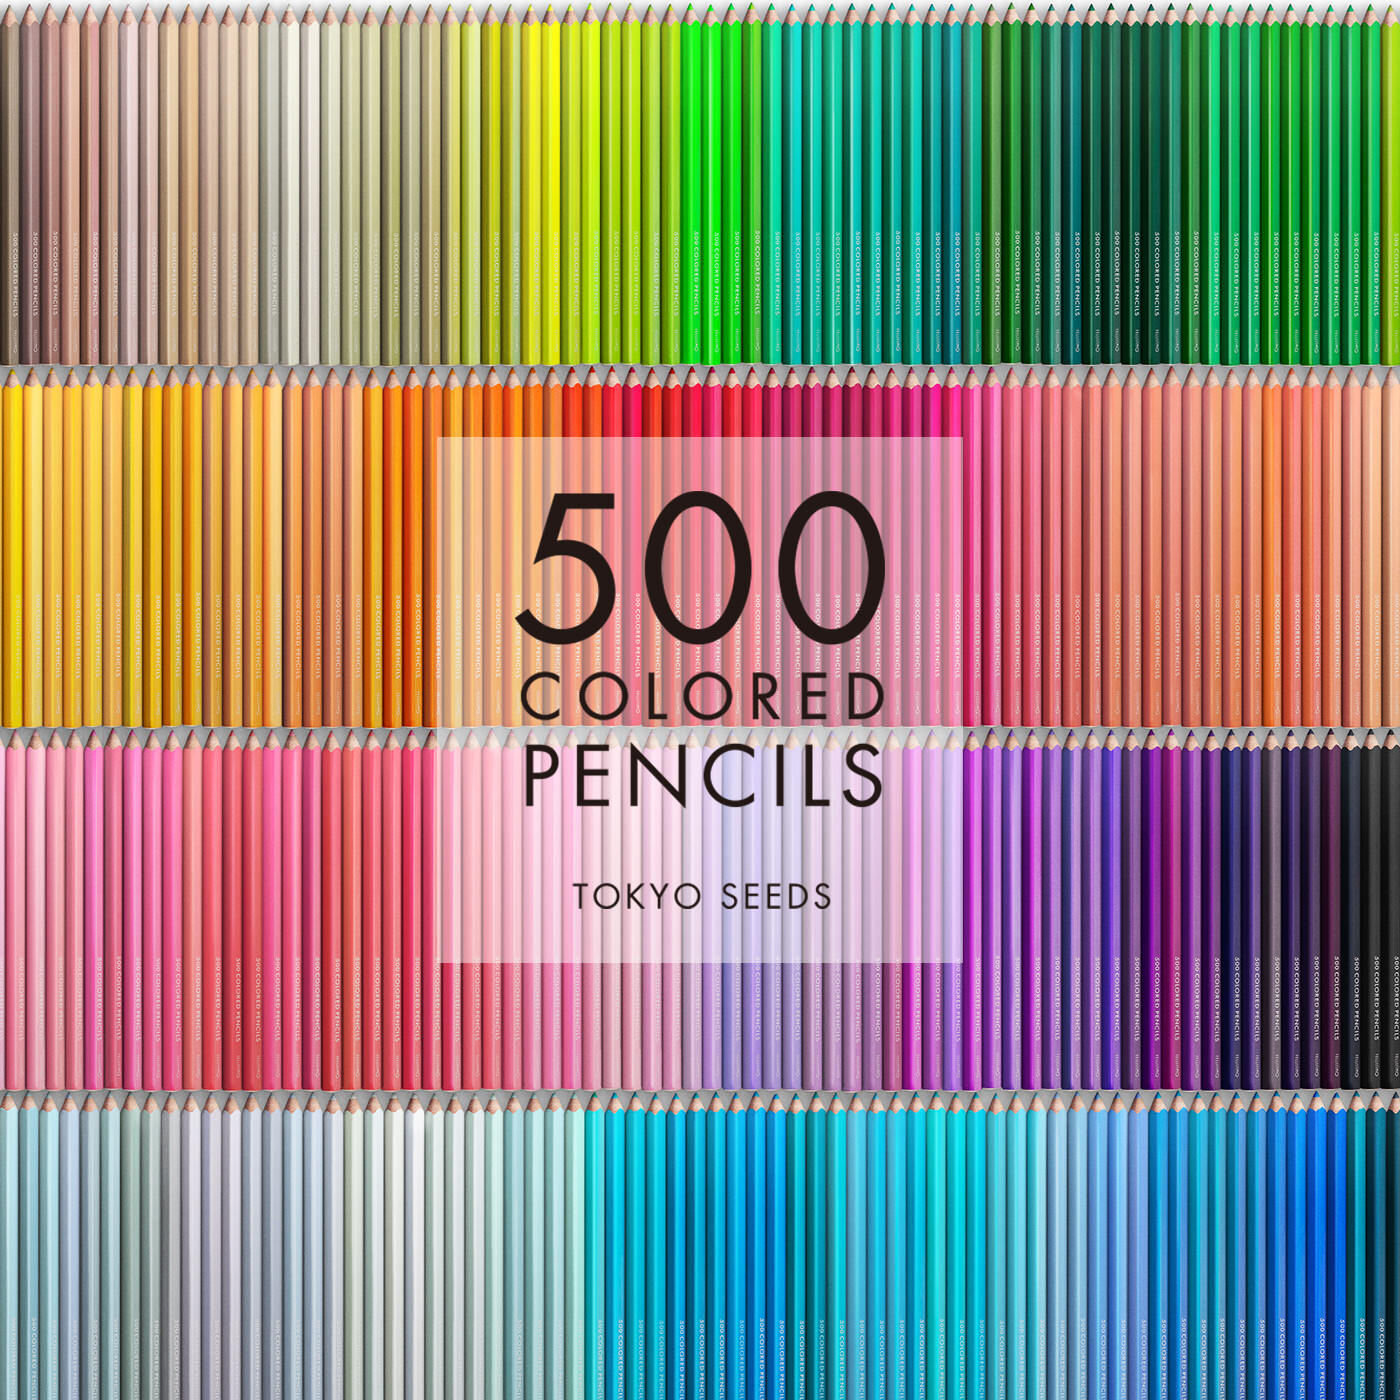 Real Stock|【370/500 SPEARMINT TULLE】500色の色えんぴつ TOKYO SEEDS|1992年、世界初の「500色」という膨大な色数の色えんぴつが誕生して以来、その販売数は発売当初から合わせると、世界55ヵ国10万セット以上。今回、メイド・イン・ジャパンにこだわり、すべてが新しく生まれ変わって登場しました。